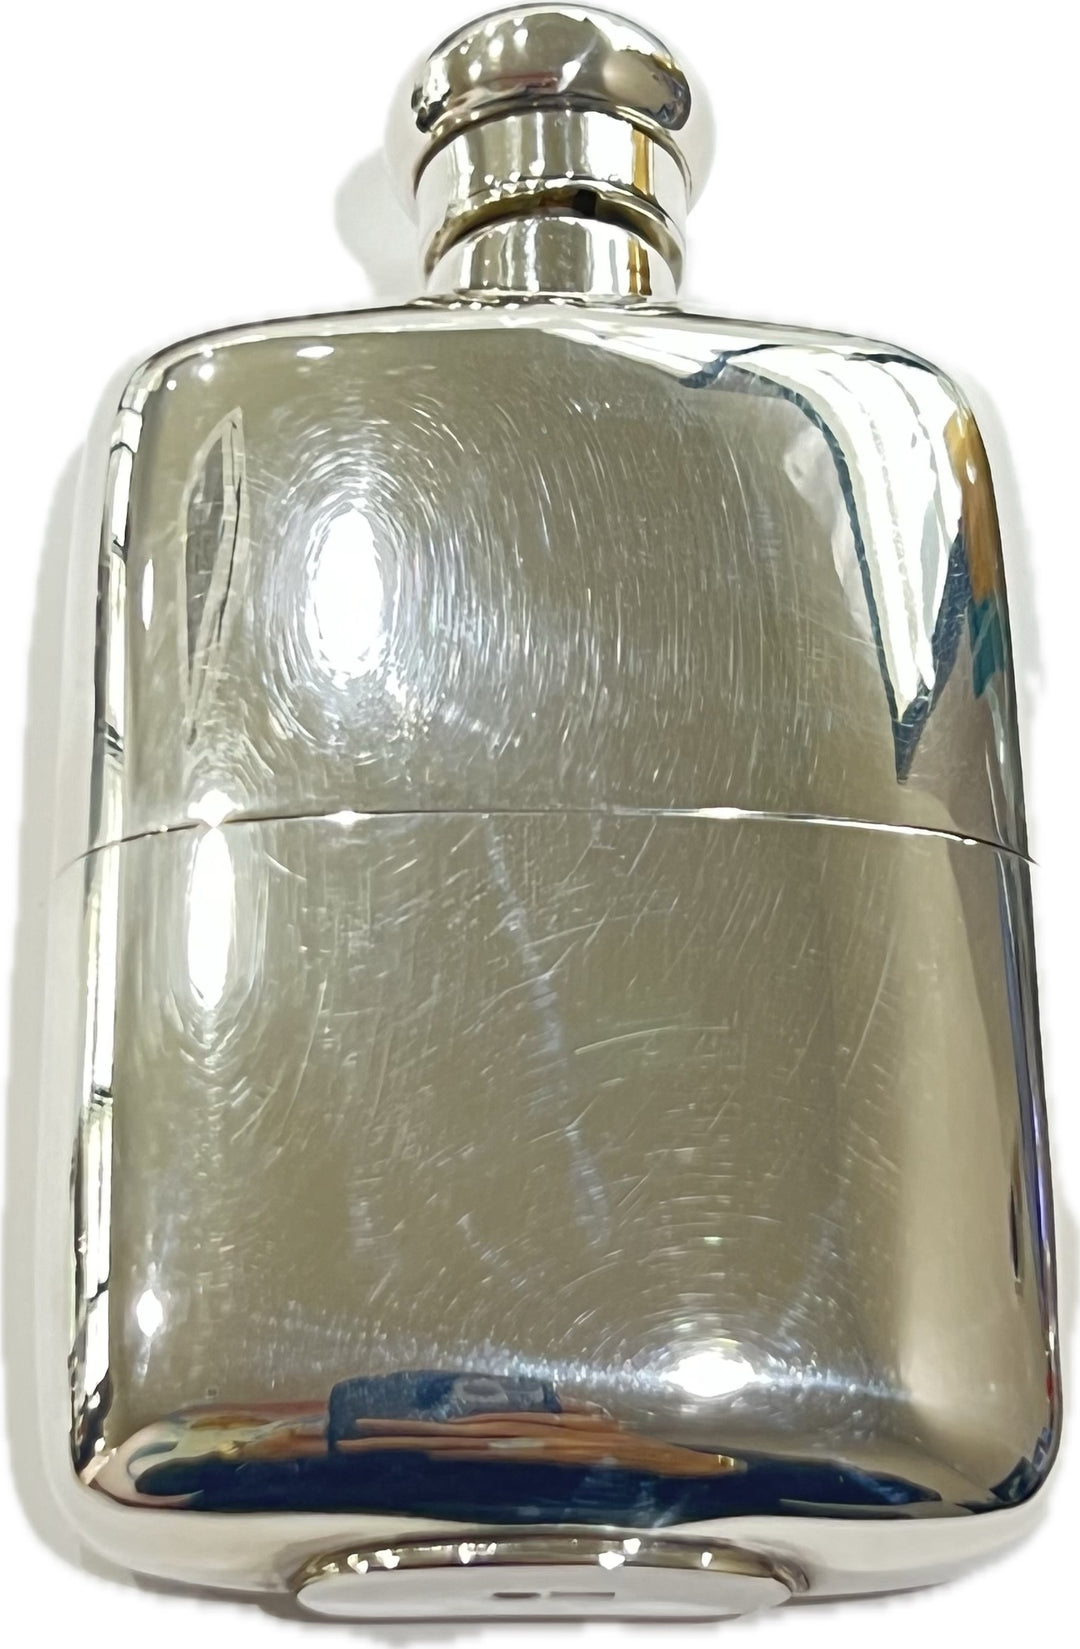 Goretta fiaschetta tascabile per liquori 4oz argento 800 ARG-LIQ-02